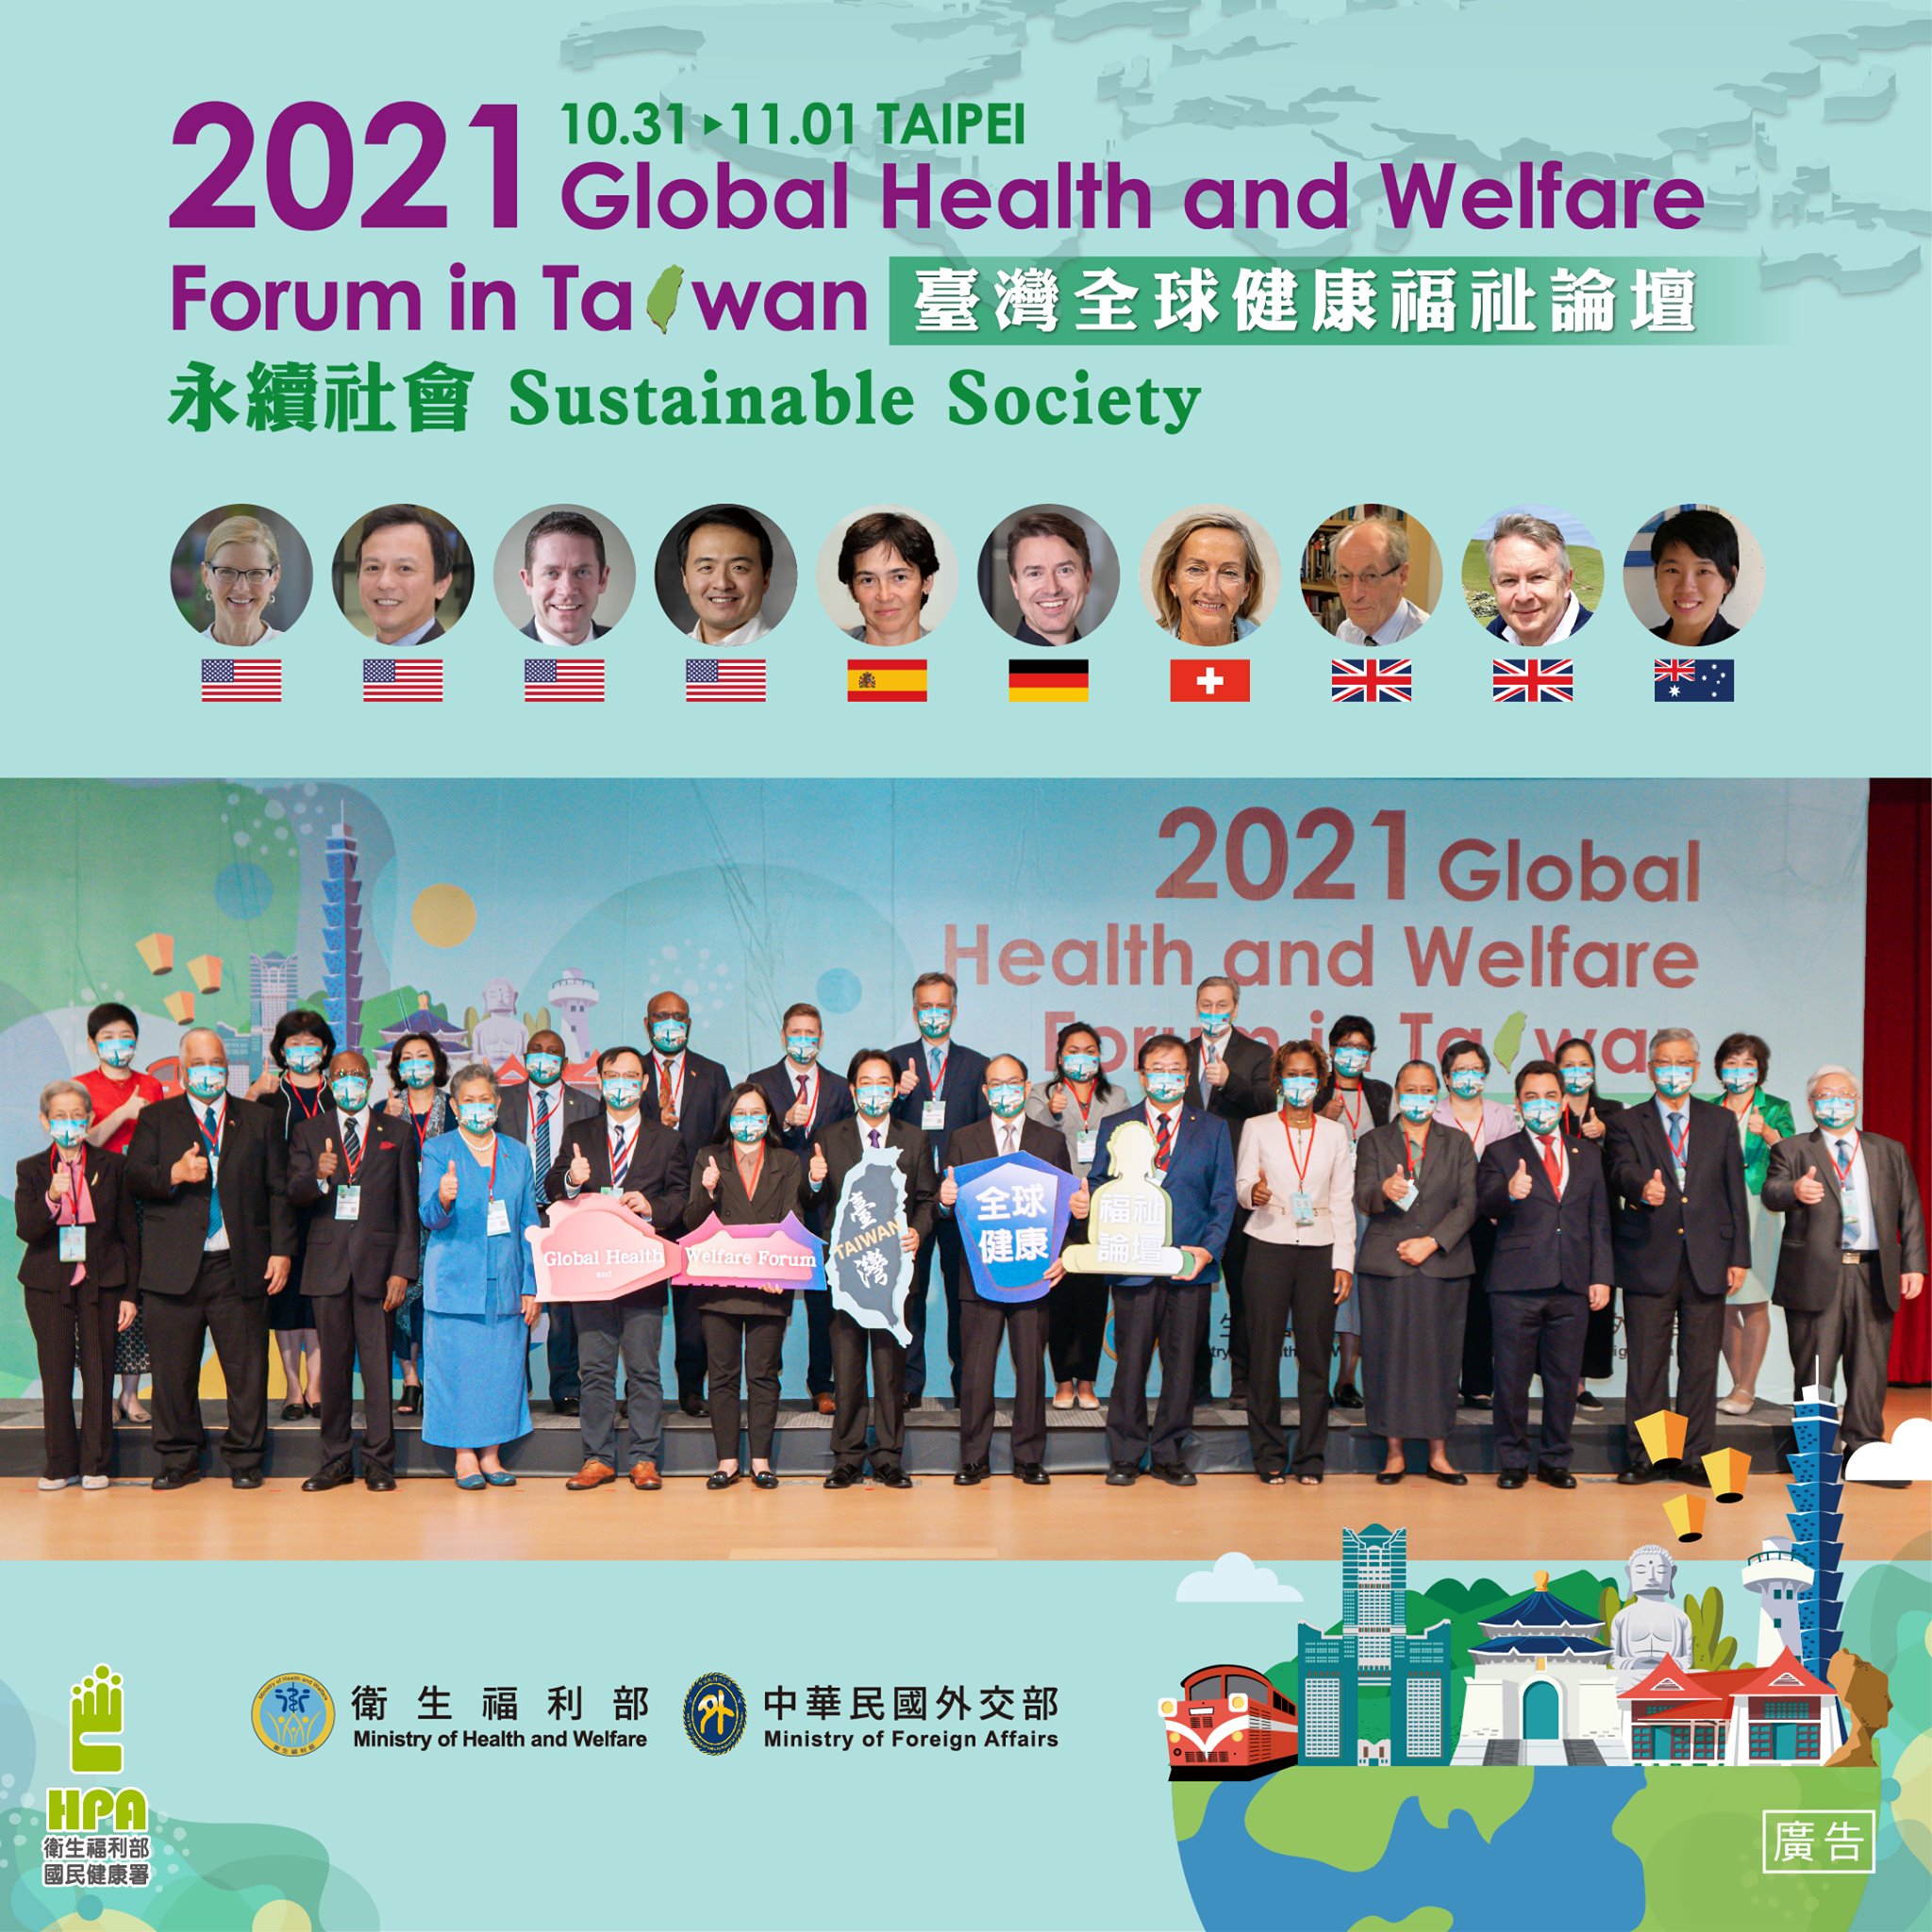 2021臺灣全球健康福祉論壇，以建構永續社會為目標 超過千人遠距齊聚，思考疫情時代的健康福祉